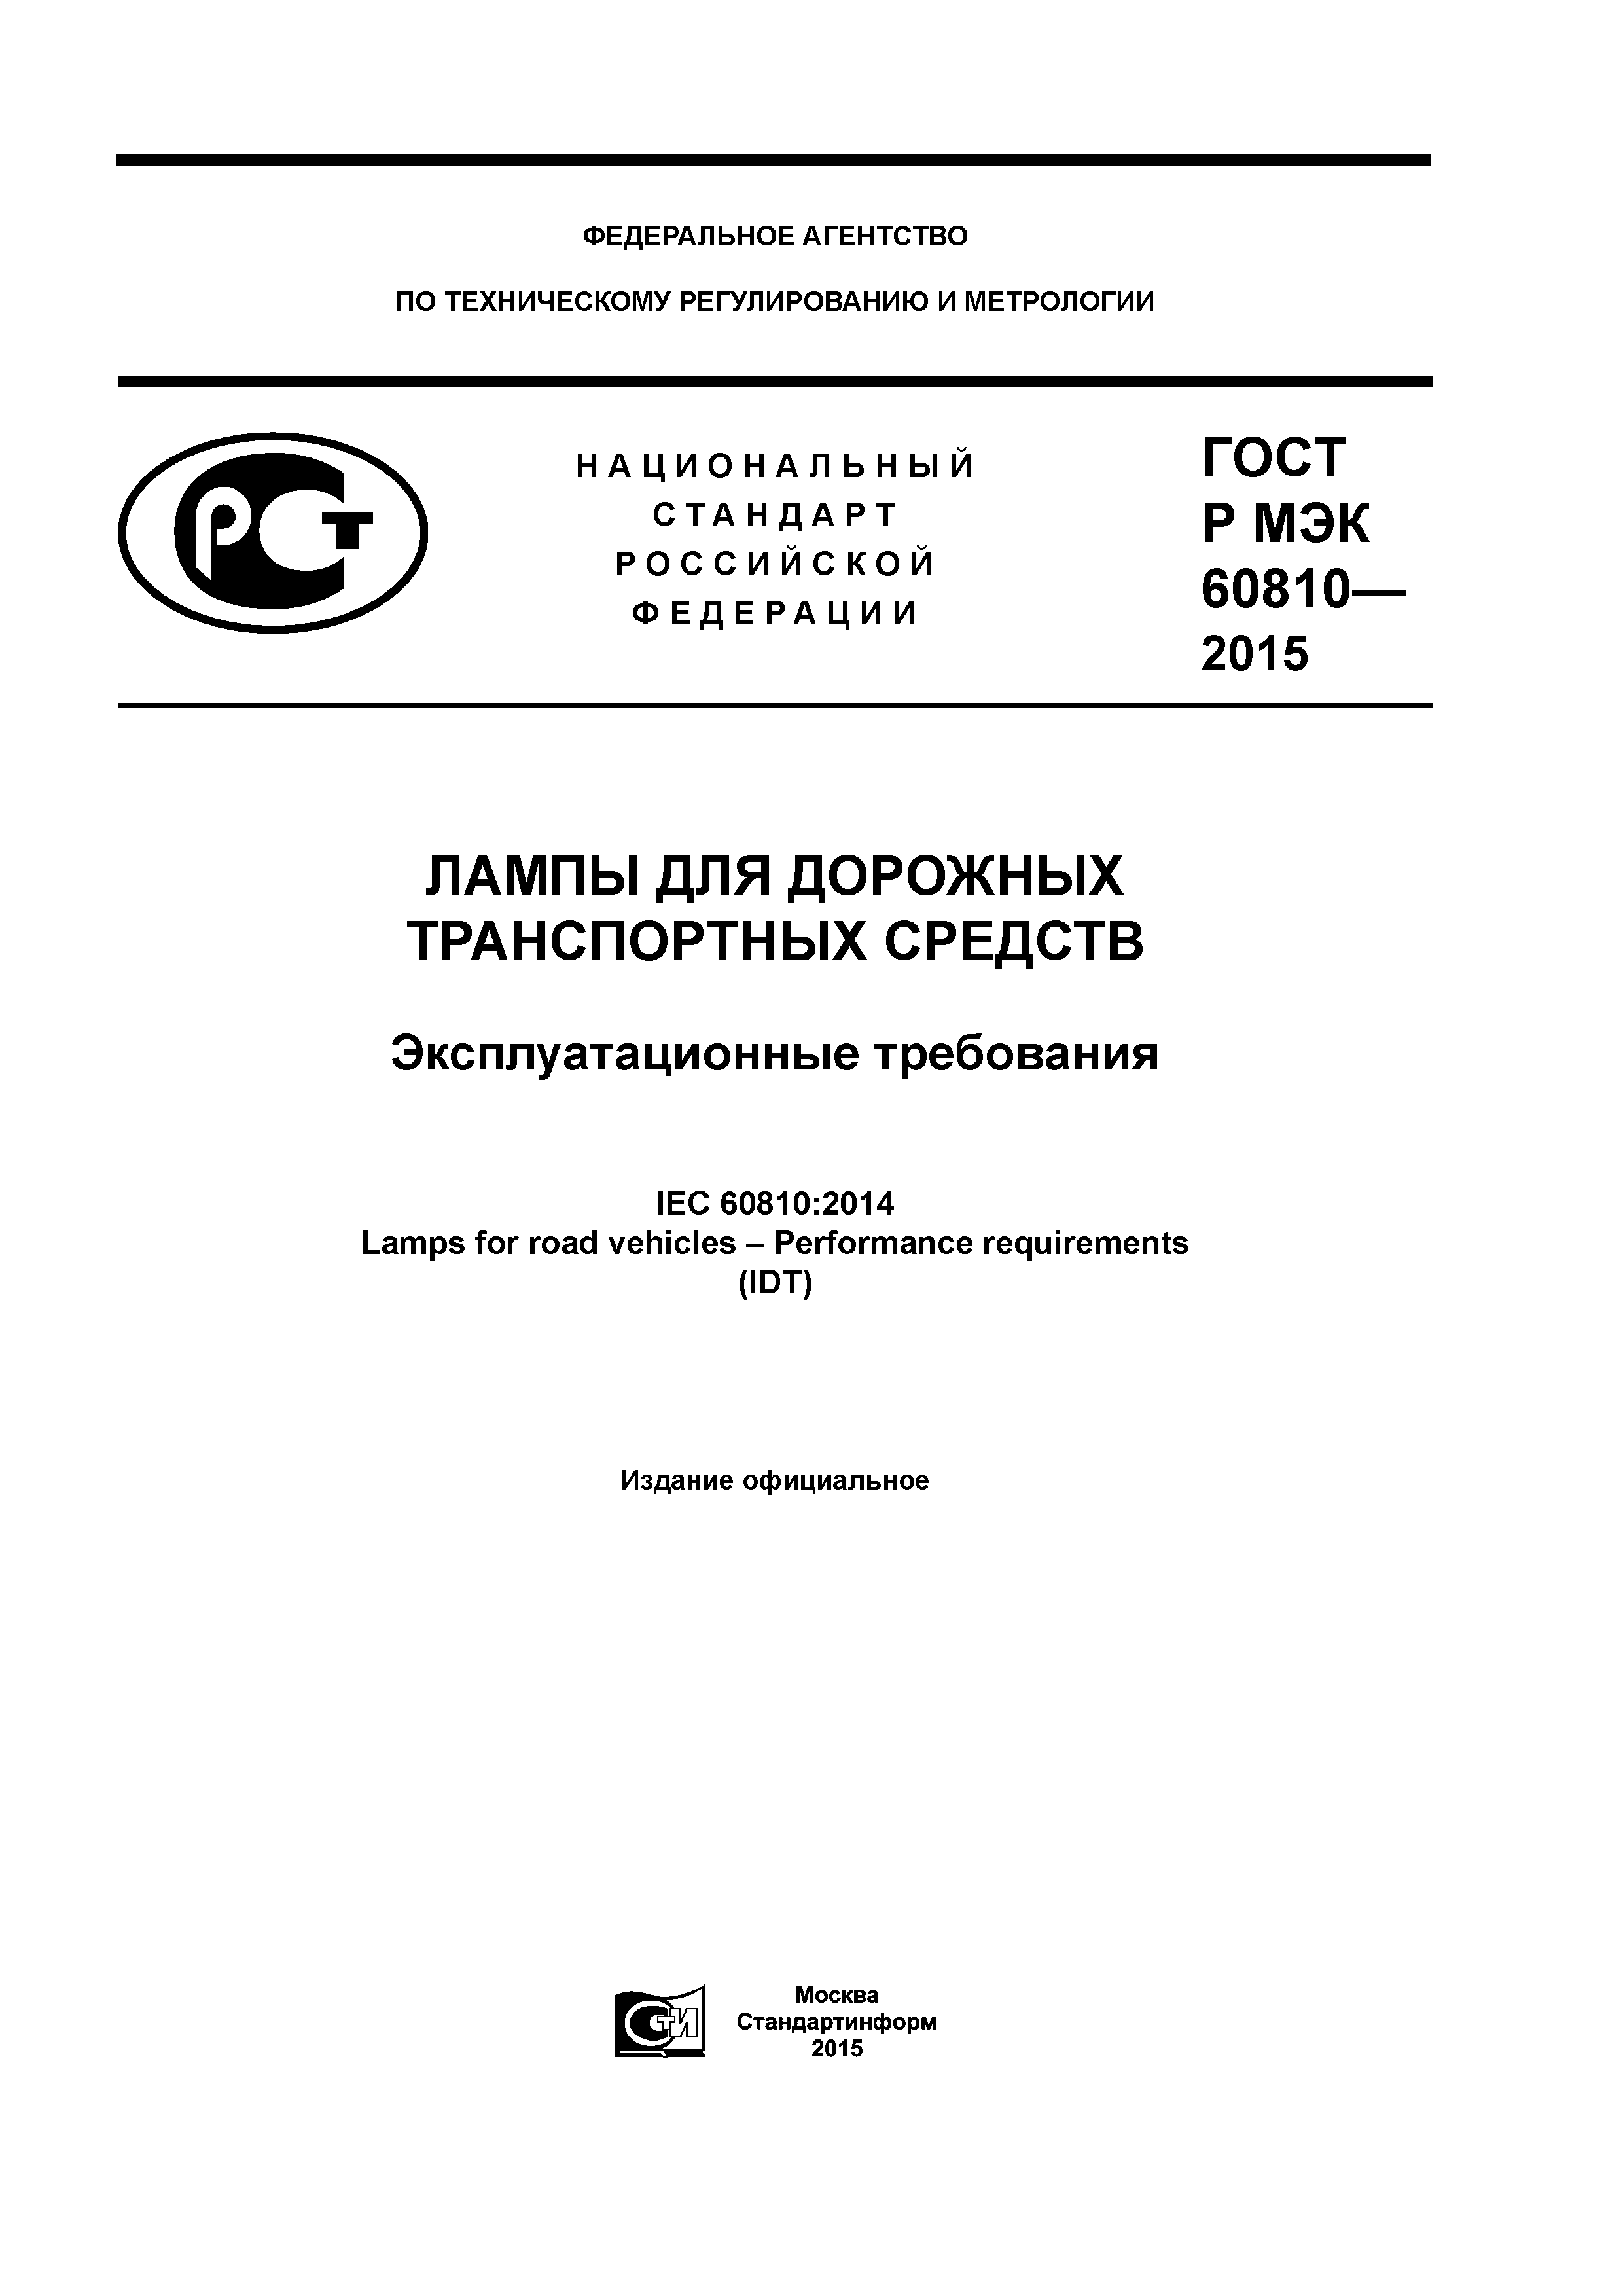 ГОСТ Р МЭК 60810-2015